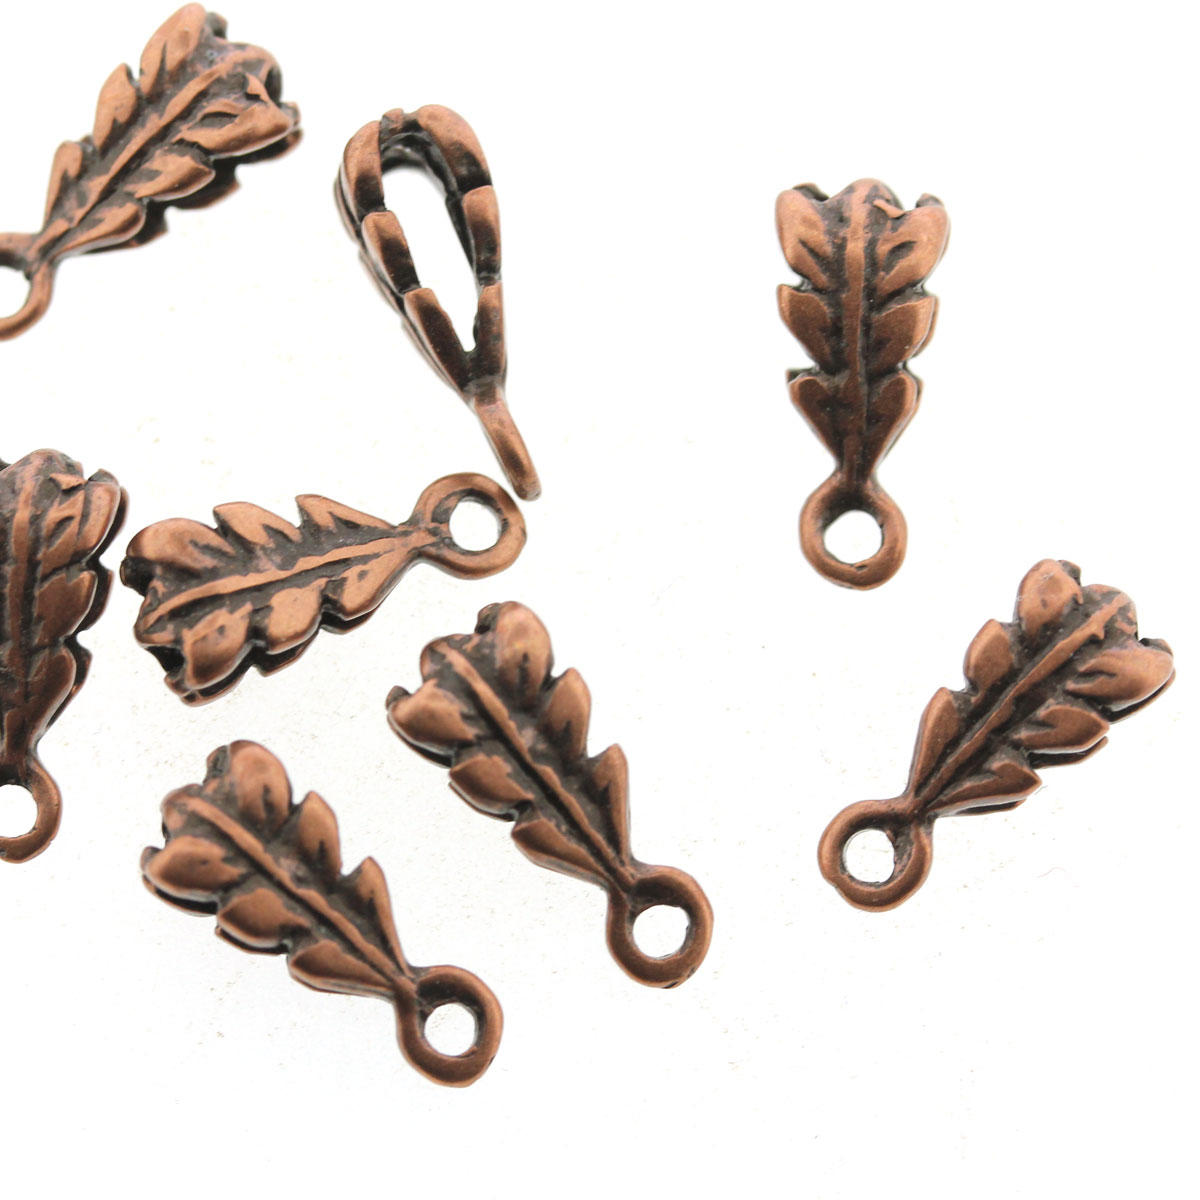 Antique Copper Component Categories